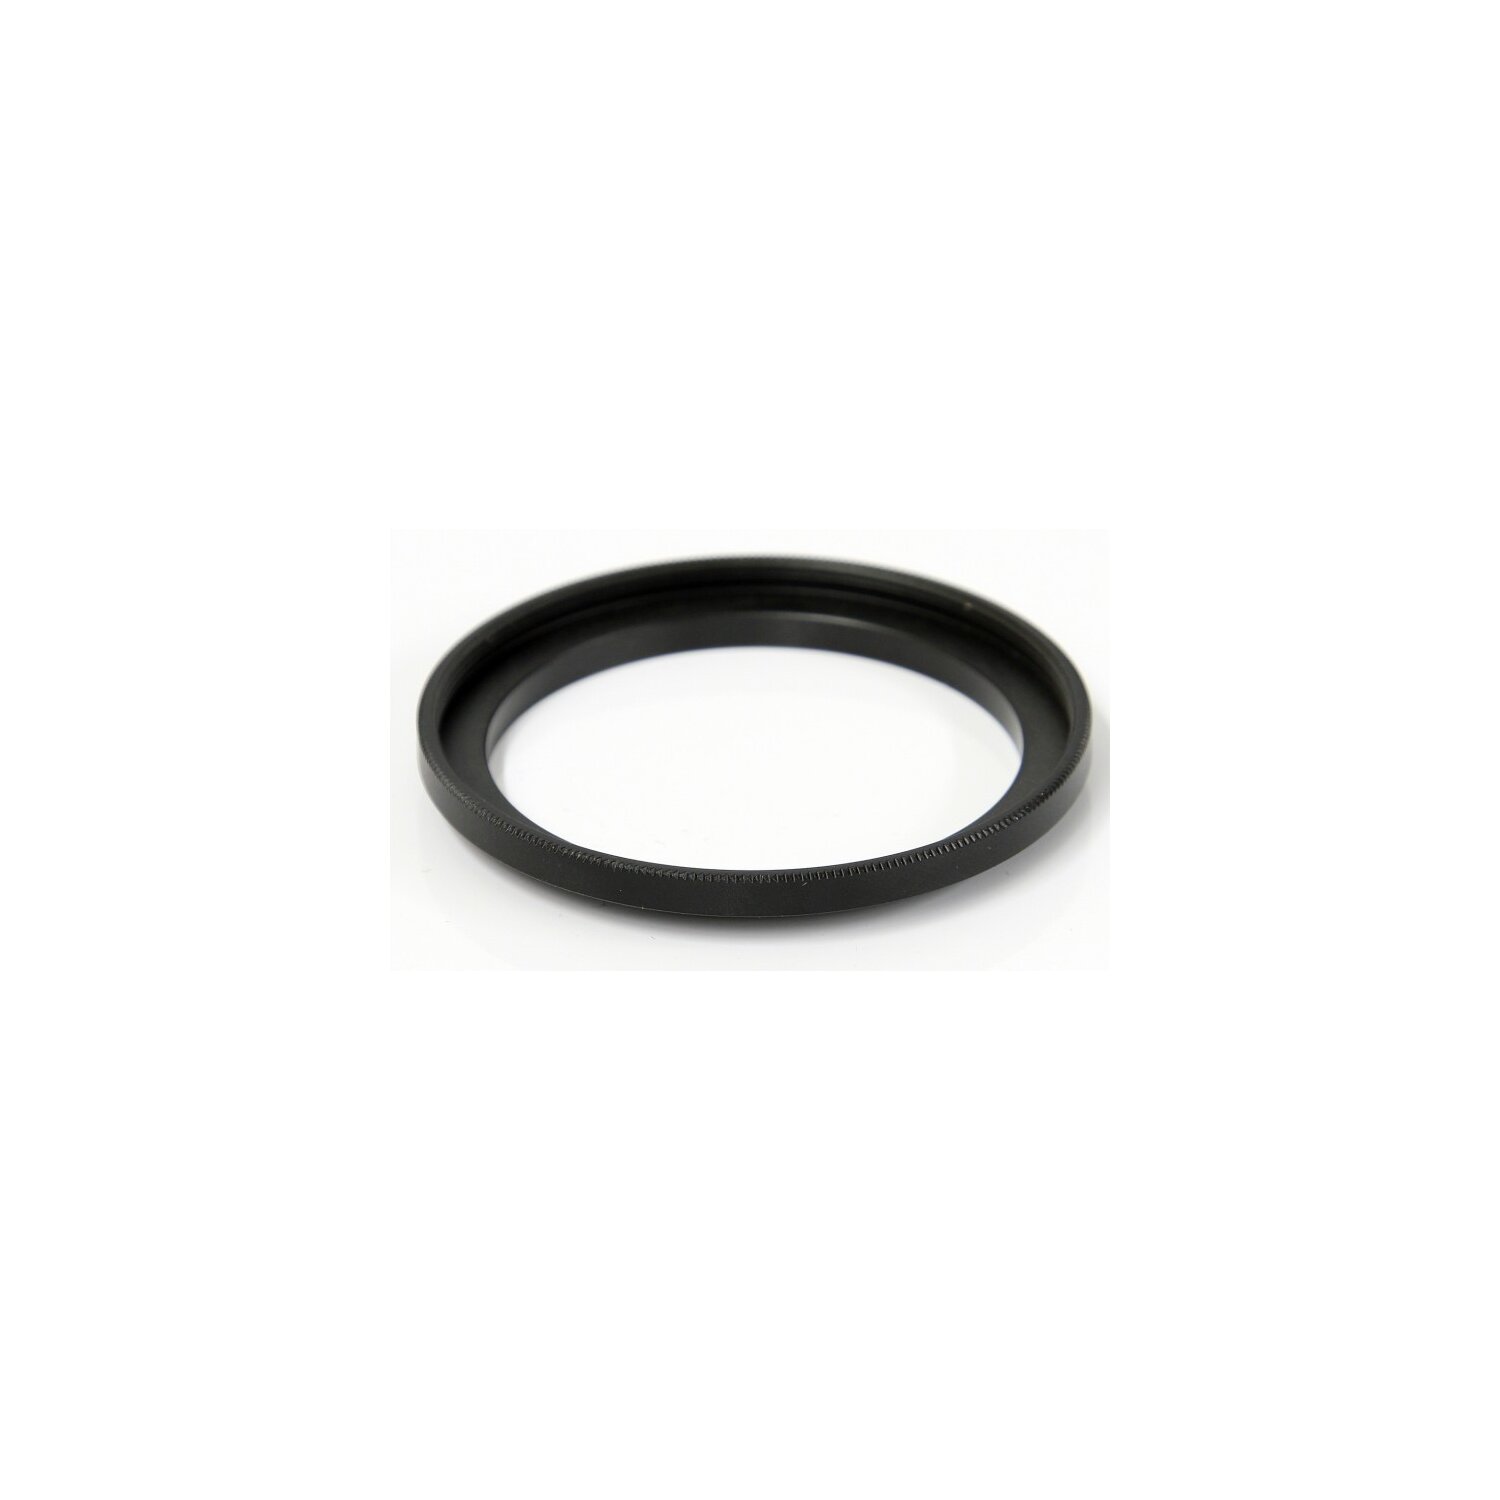 Adapterring 37,5mm - 52mm: 37,5mm Außengewinde und 52mm Innengewinde (Step Up Ring) - in schwarz